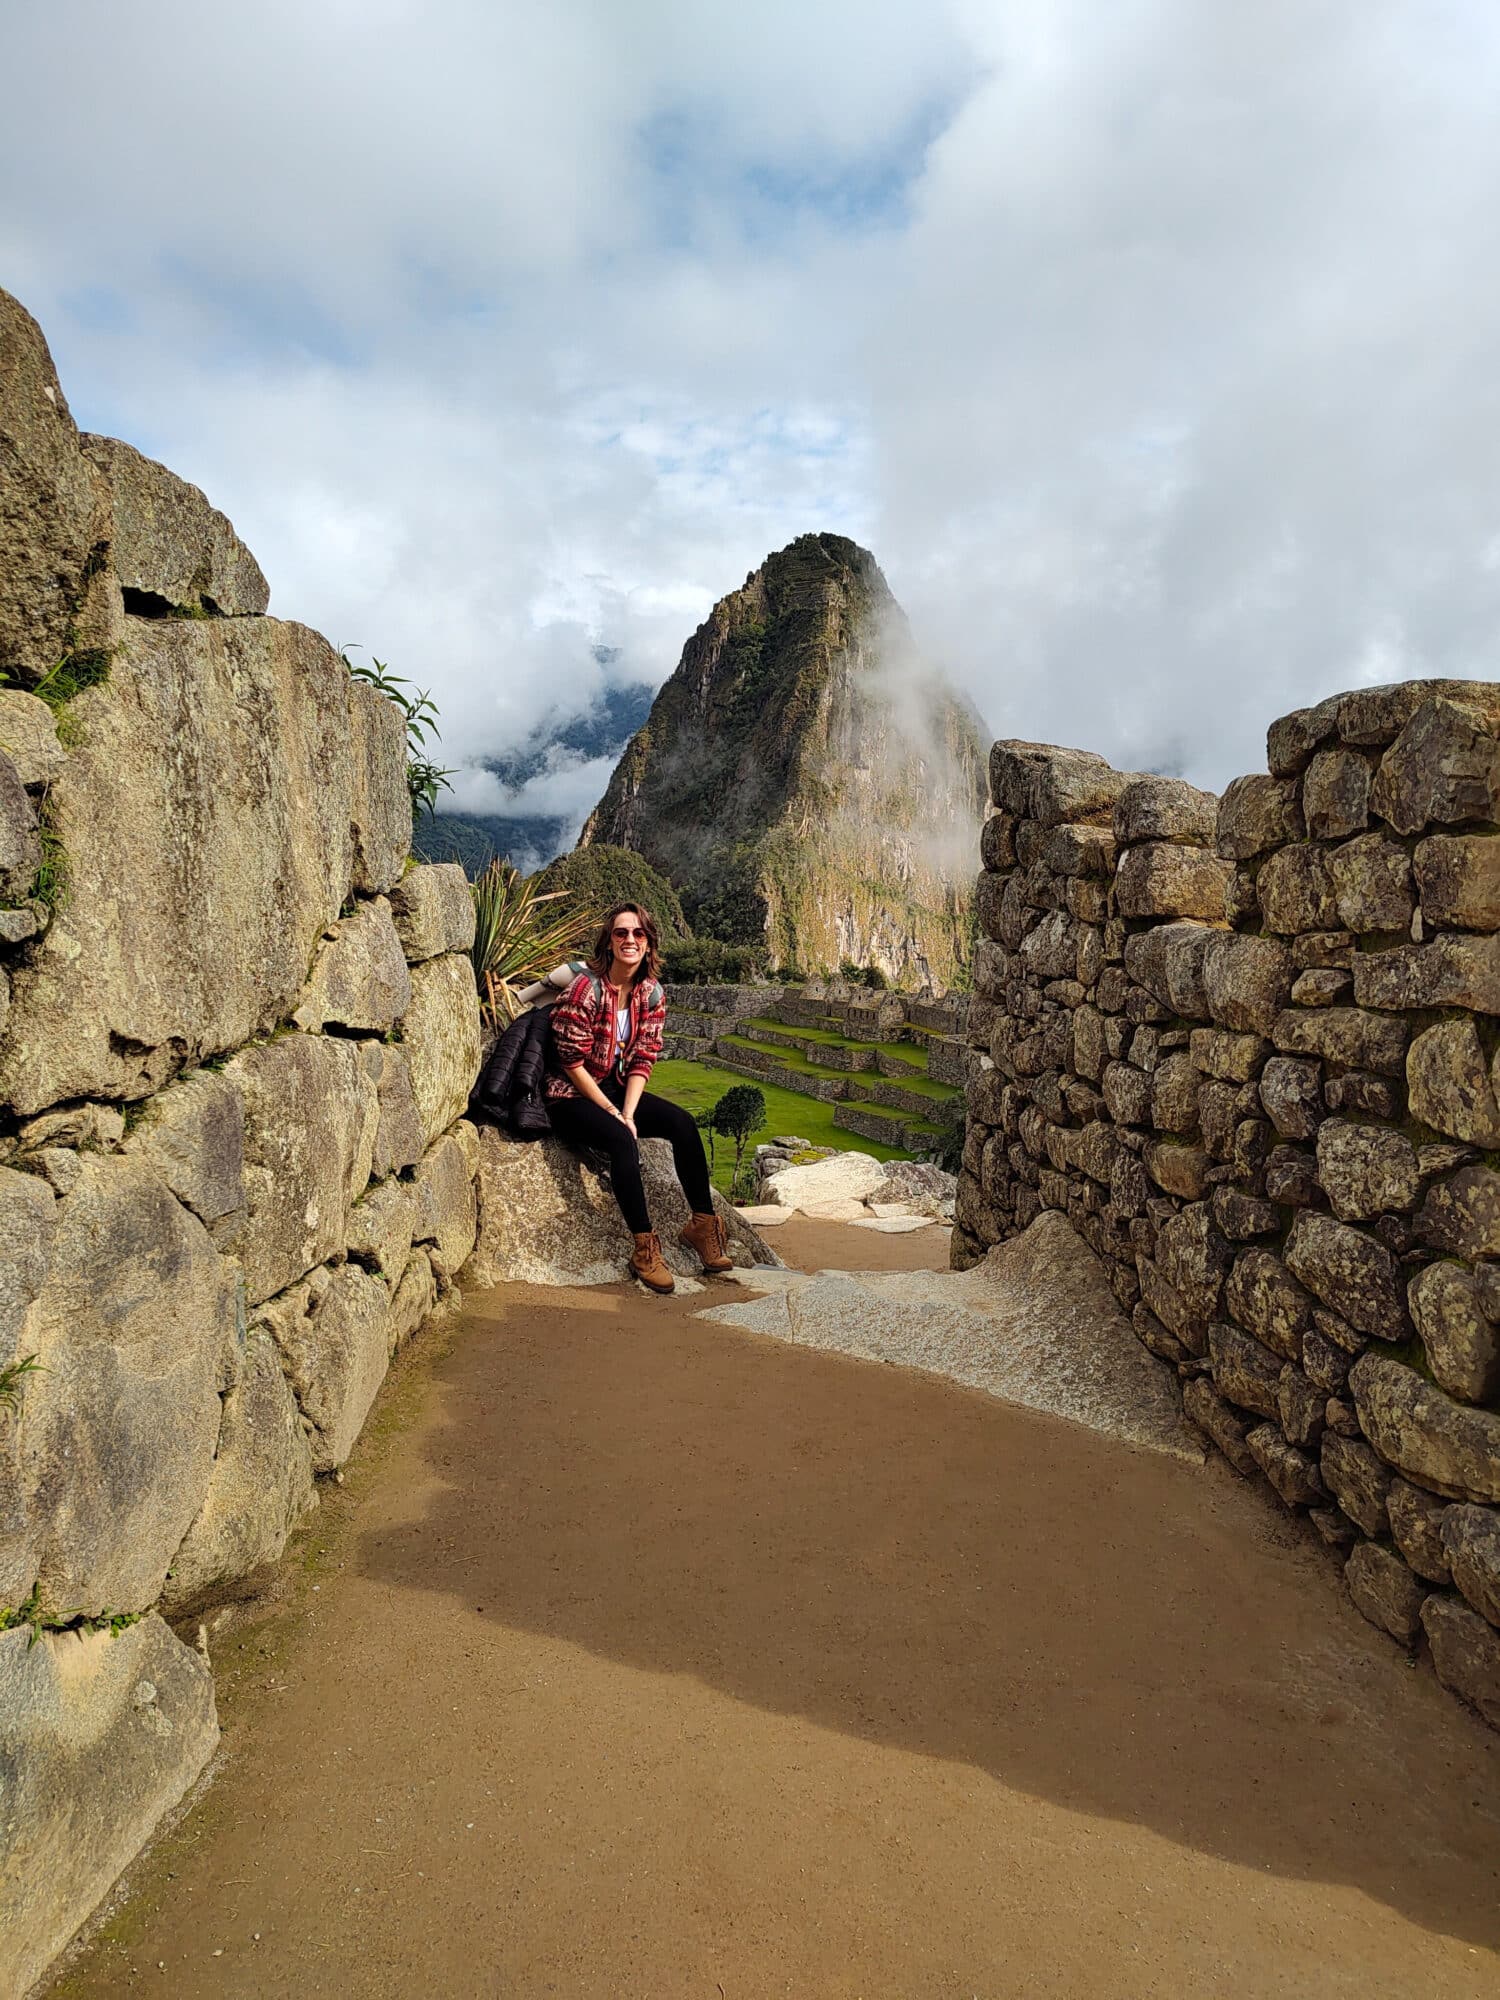 mulher sentada em cima de uma pedra no chão, usando um cardigã artesanal em tons vermelhos. Nas duas laterais é possível enxergar muros de pedras, e ao fundo do corredor, há uma parte da montanha de Machupicchu